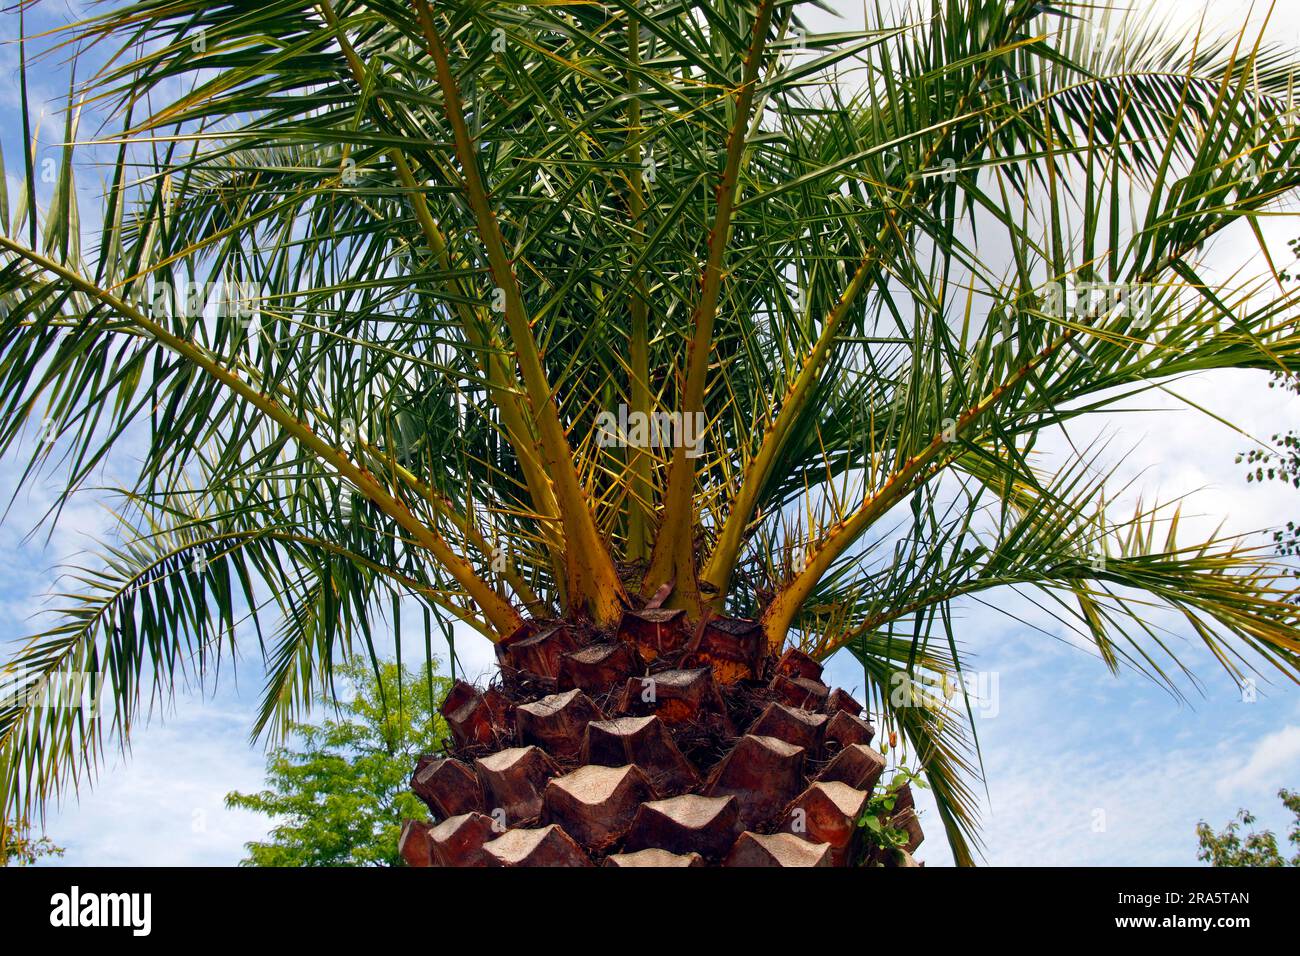 Palmier date de l'île des Canaries (Phoenix canariensis), Îles Canaries, Espagne Banque D'Images